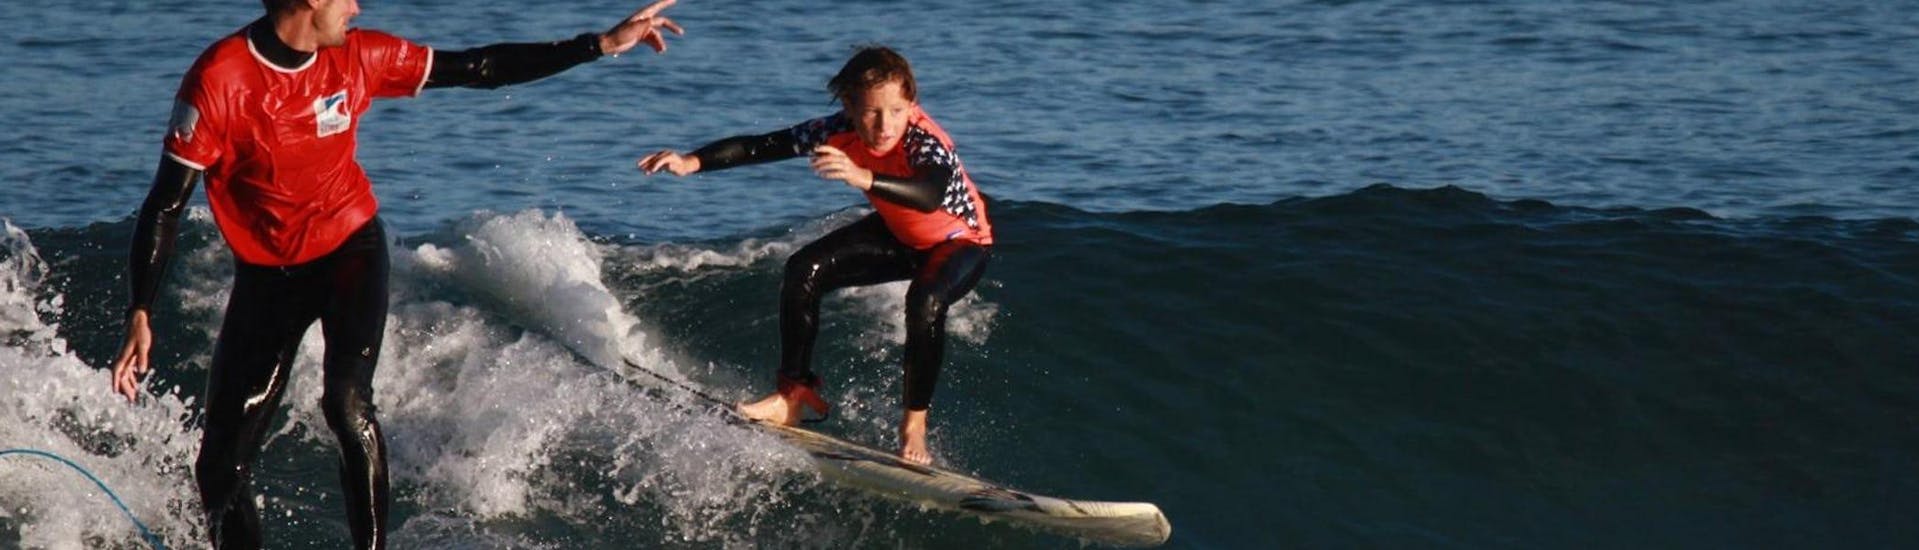 Lezioni di surf a Hendaye da 7 anni per surfisti avanzati.